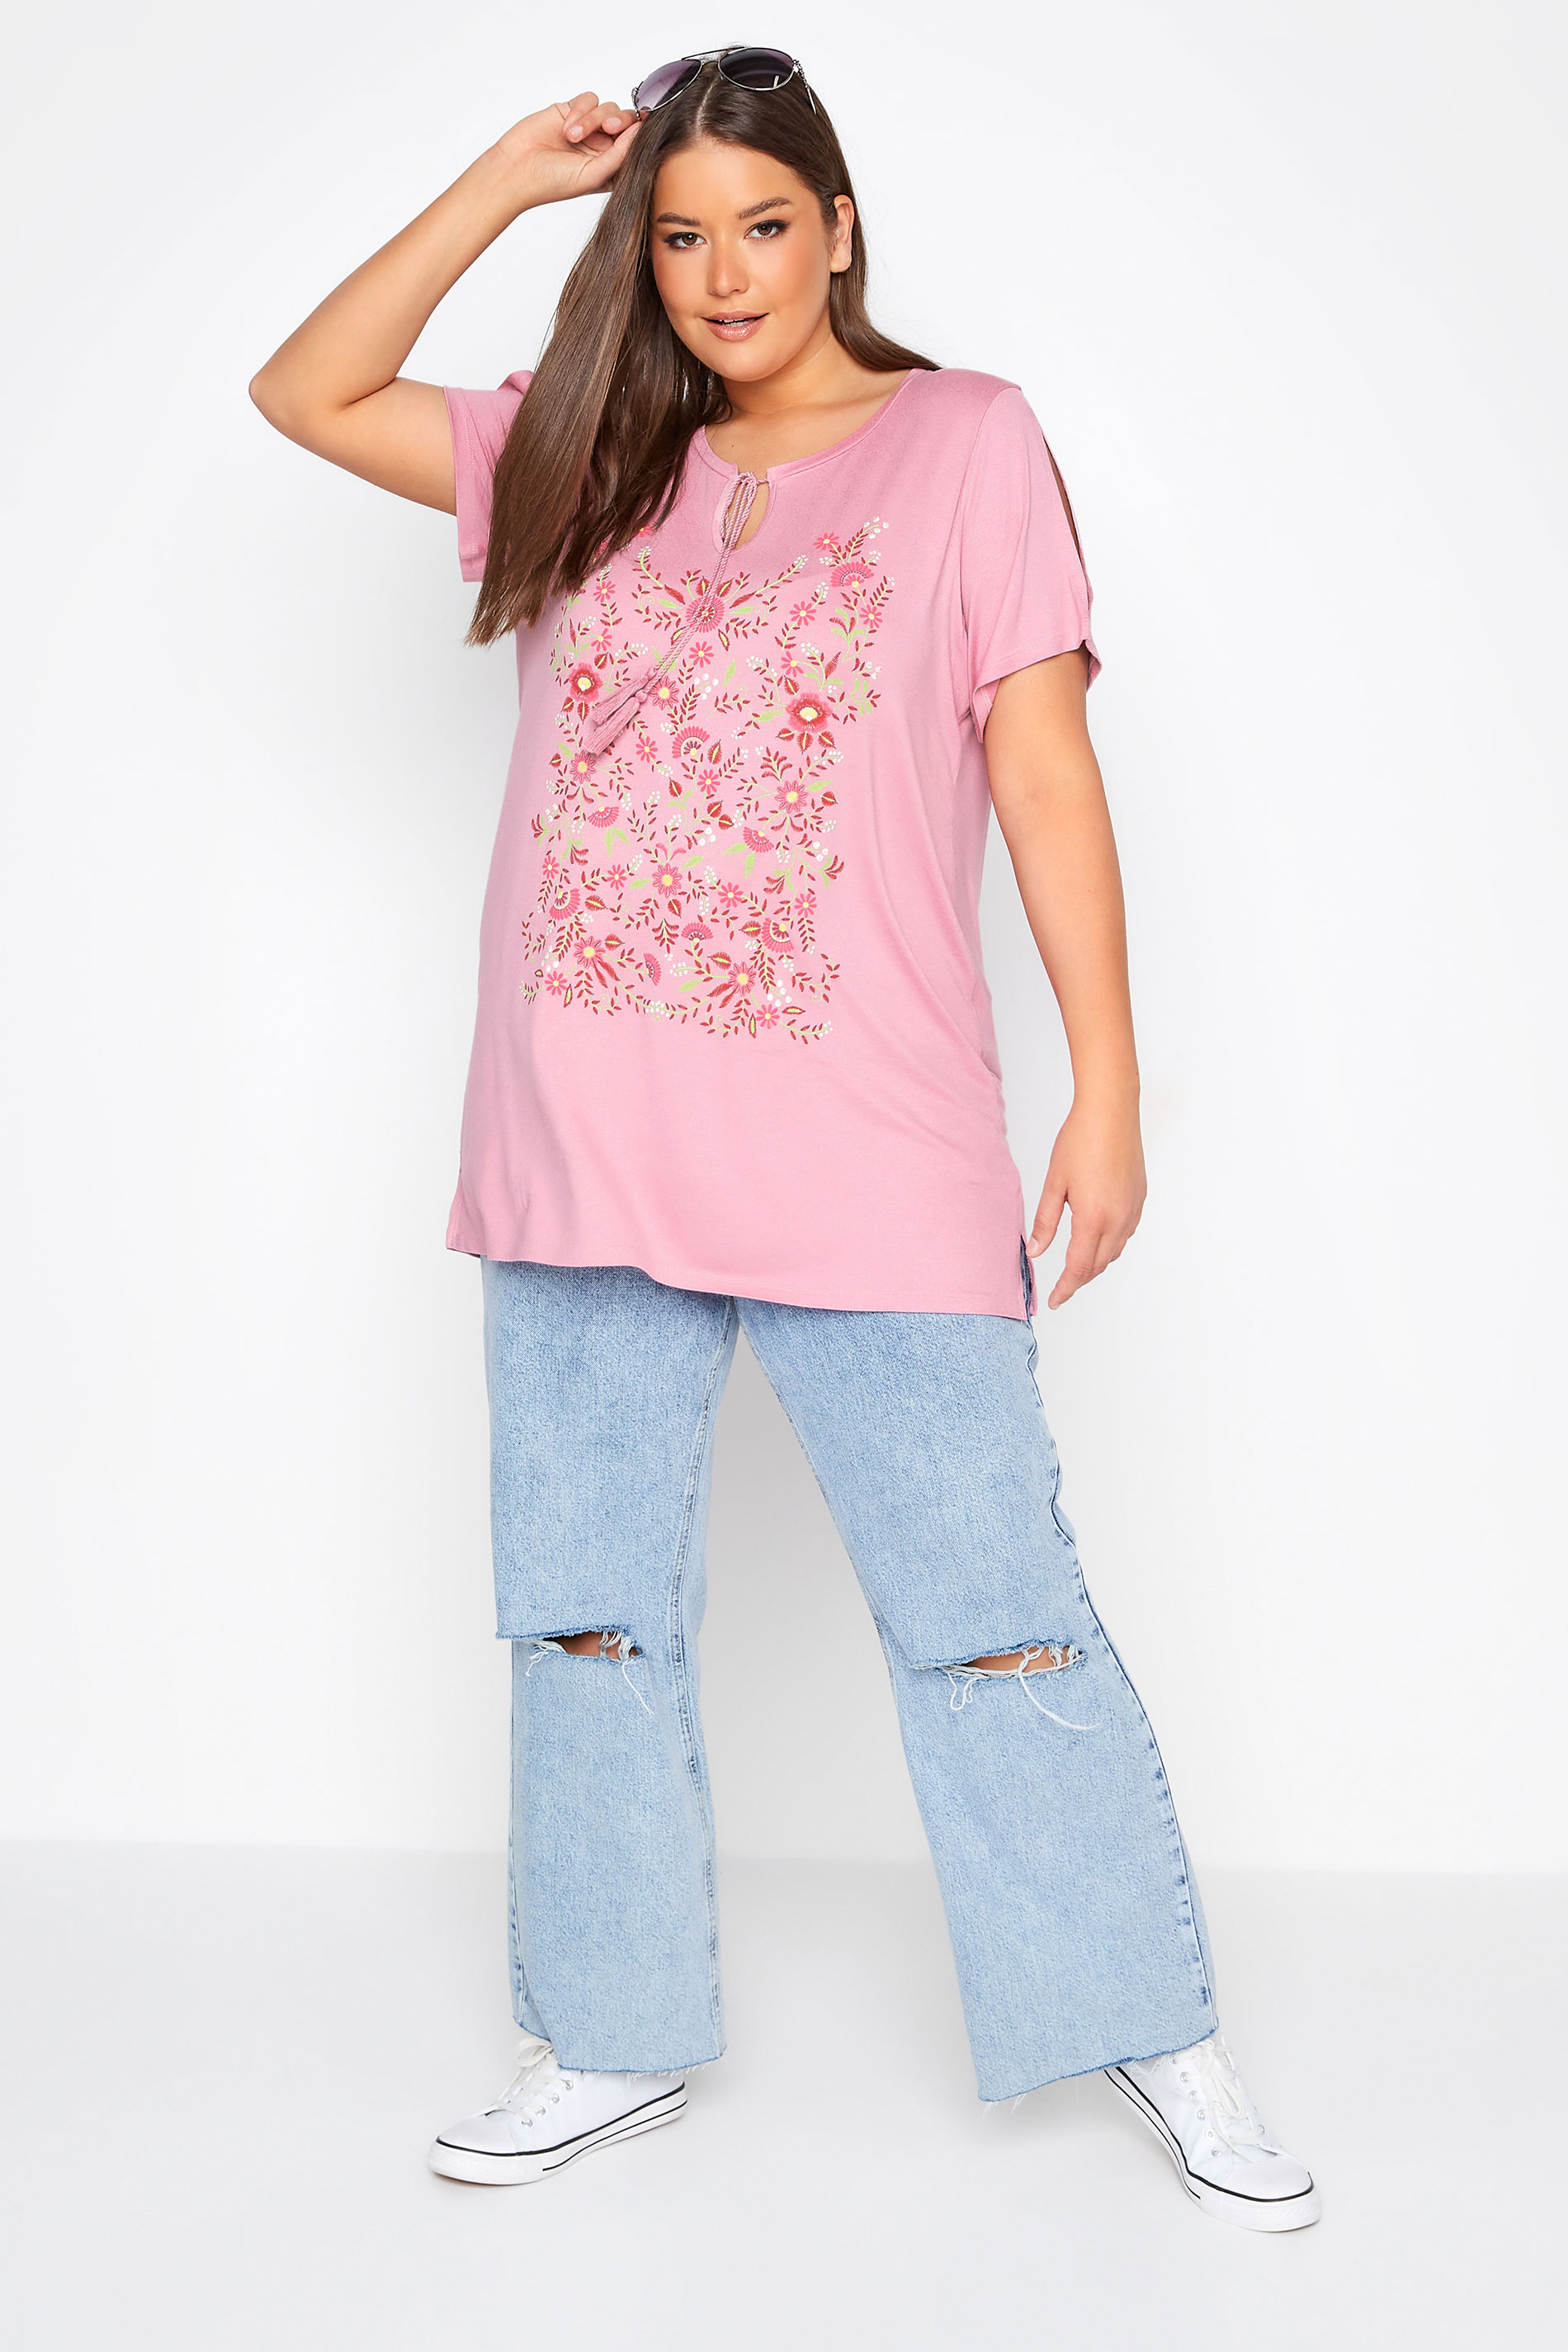 Grande taille  Tops Grande taille  T-Shirts | T-Shirt Rose Design Floral Manches Découpées - QS27695